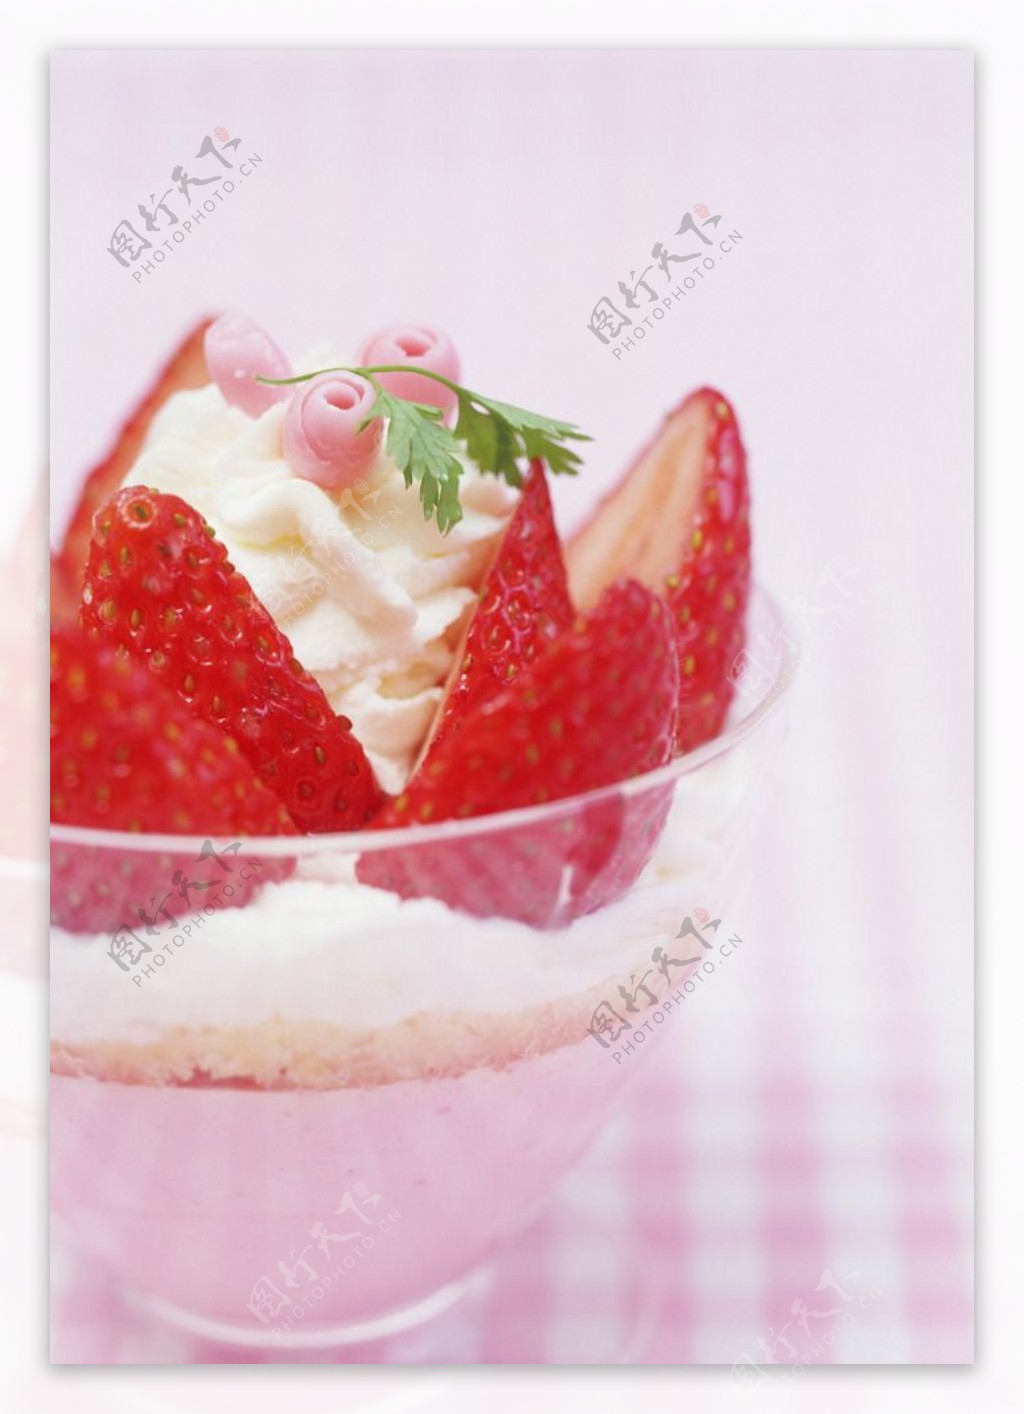 玻璃瓶盖草莓冰沙-千叶网